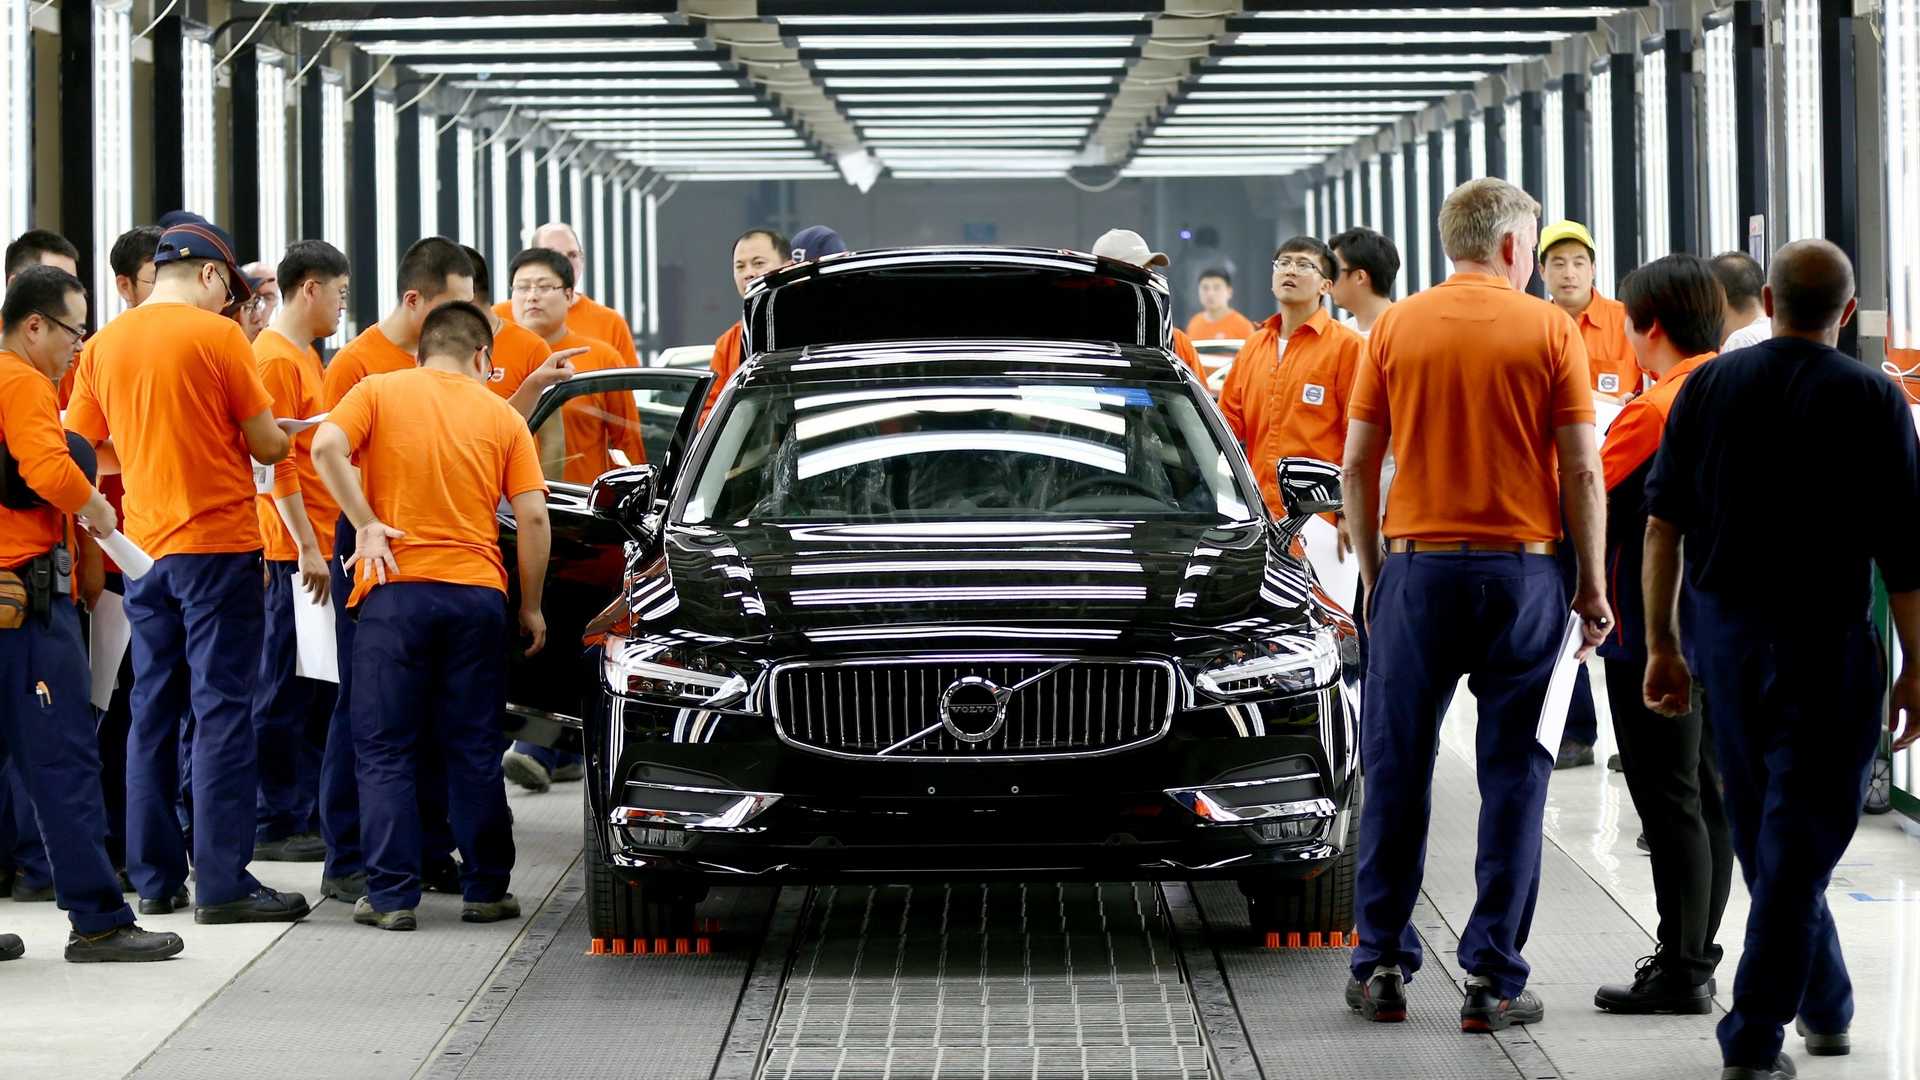 فولفو: جودة صناعة السيارات في الصين أفضل من أوروبا لهذا السبب 1